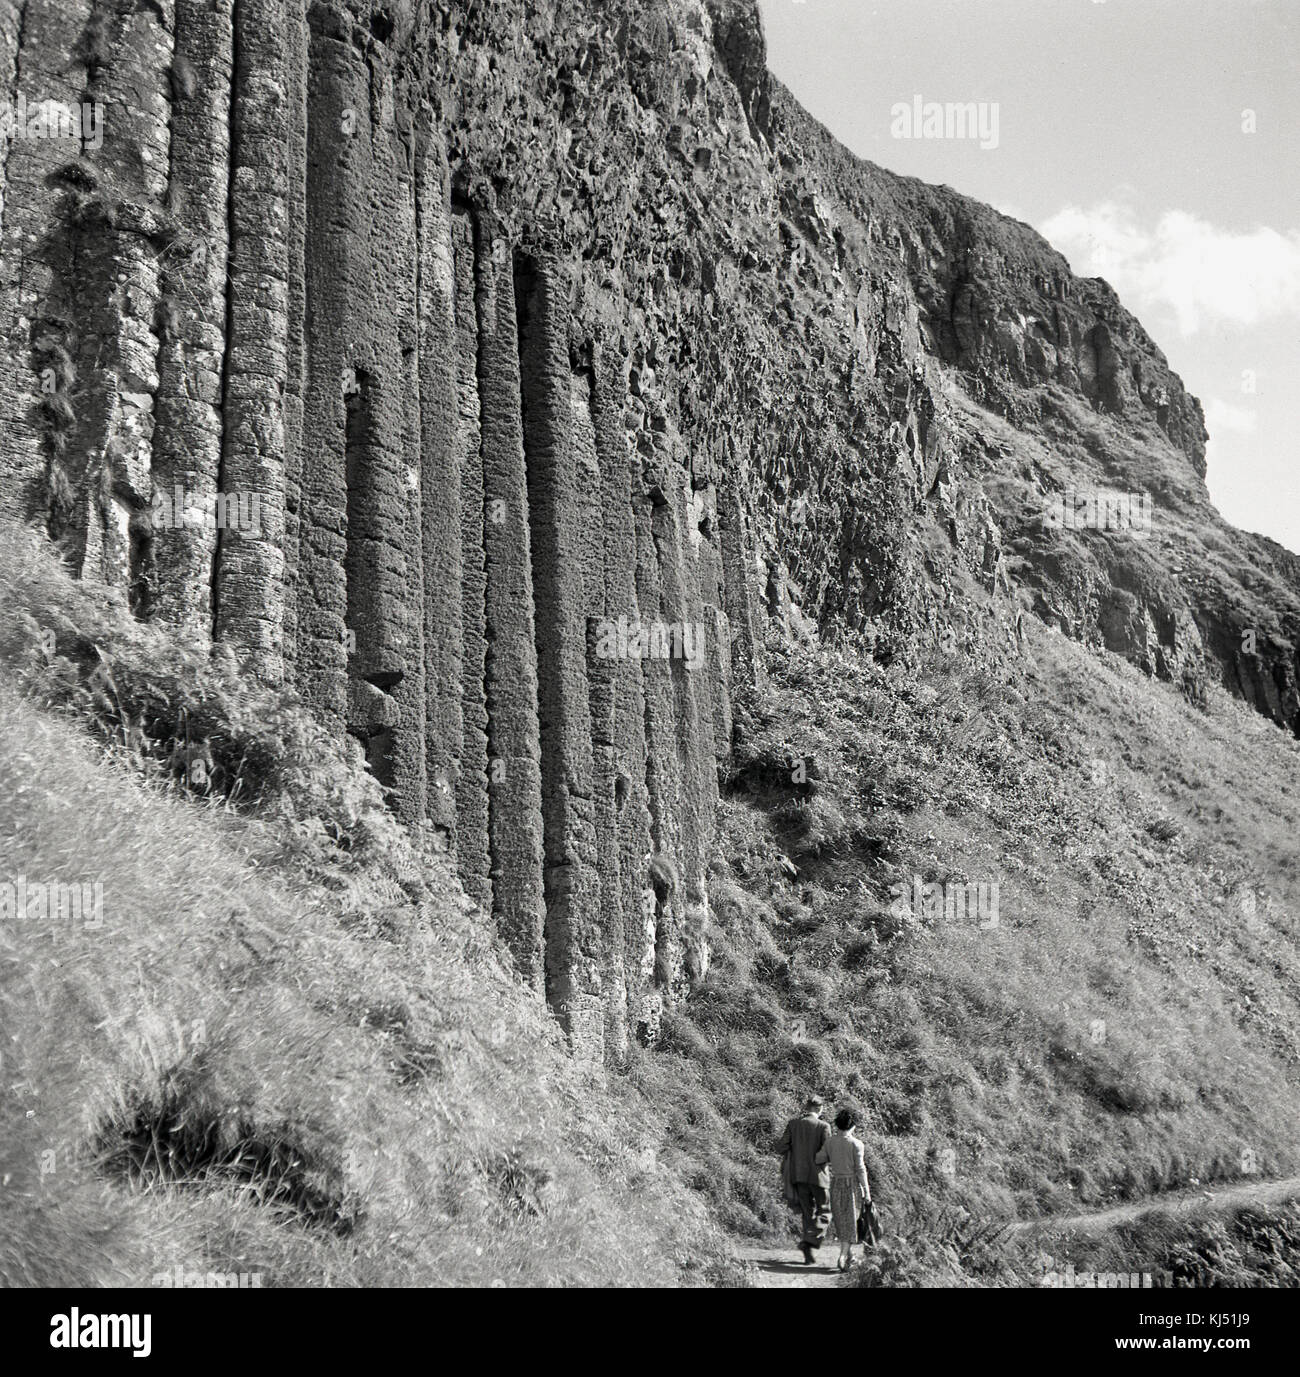 Années 1950, historique, un couple marcher ensemble le long d'un étroit sentier littoral à côté d'une falaise abrupte montrant les anciennes colonnes de basalte volcanique et de formations rocheuses qui font de la Giant's Causeway en Co Antrim, en Irlande du Nord, un endroit si spécial à visiter. Banque D'Images